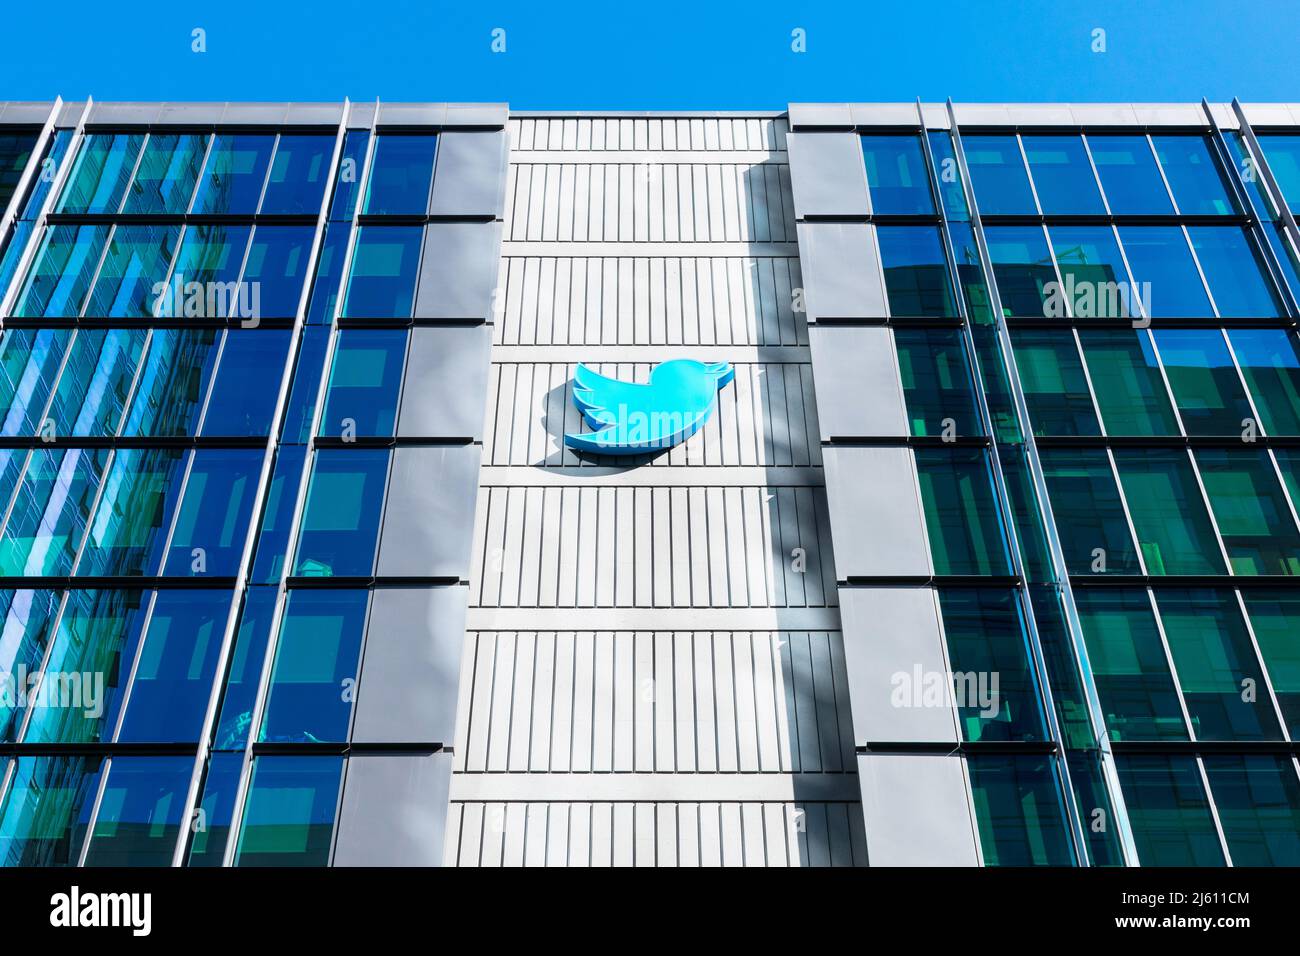 Twitter segno, logo sulla sede centrale edificio del campus. Twitter è il servizio americano di microblogging e social networking - San Francisco, California, USA Foto Stock